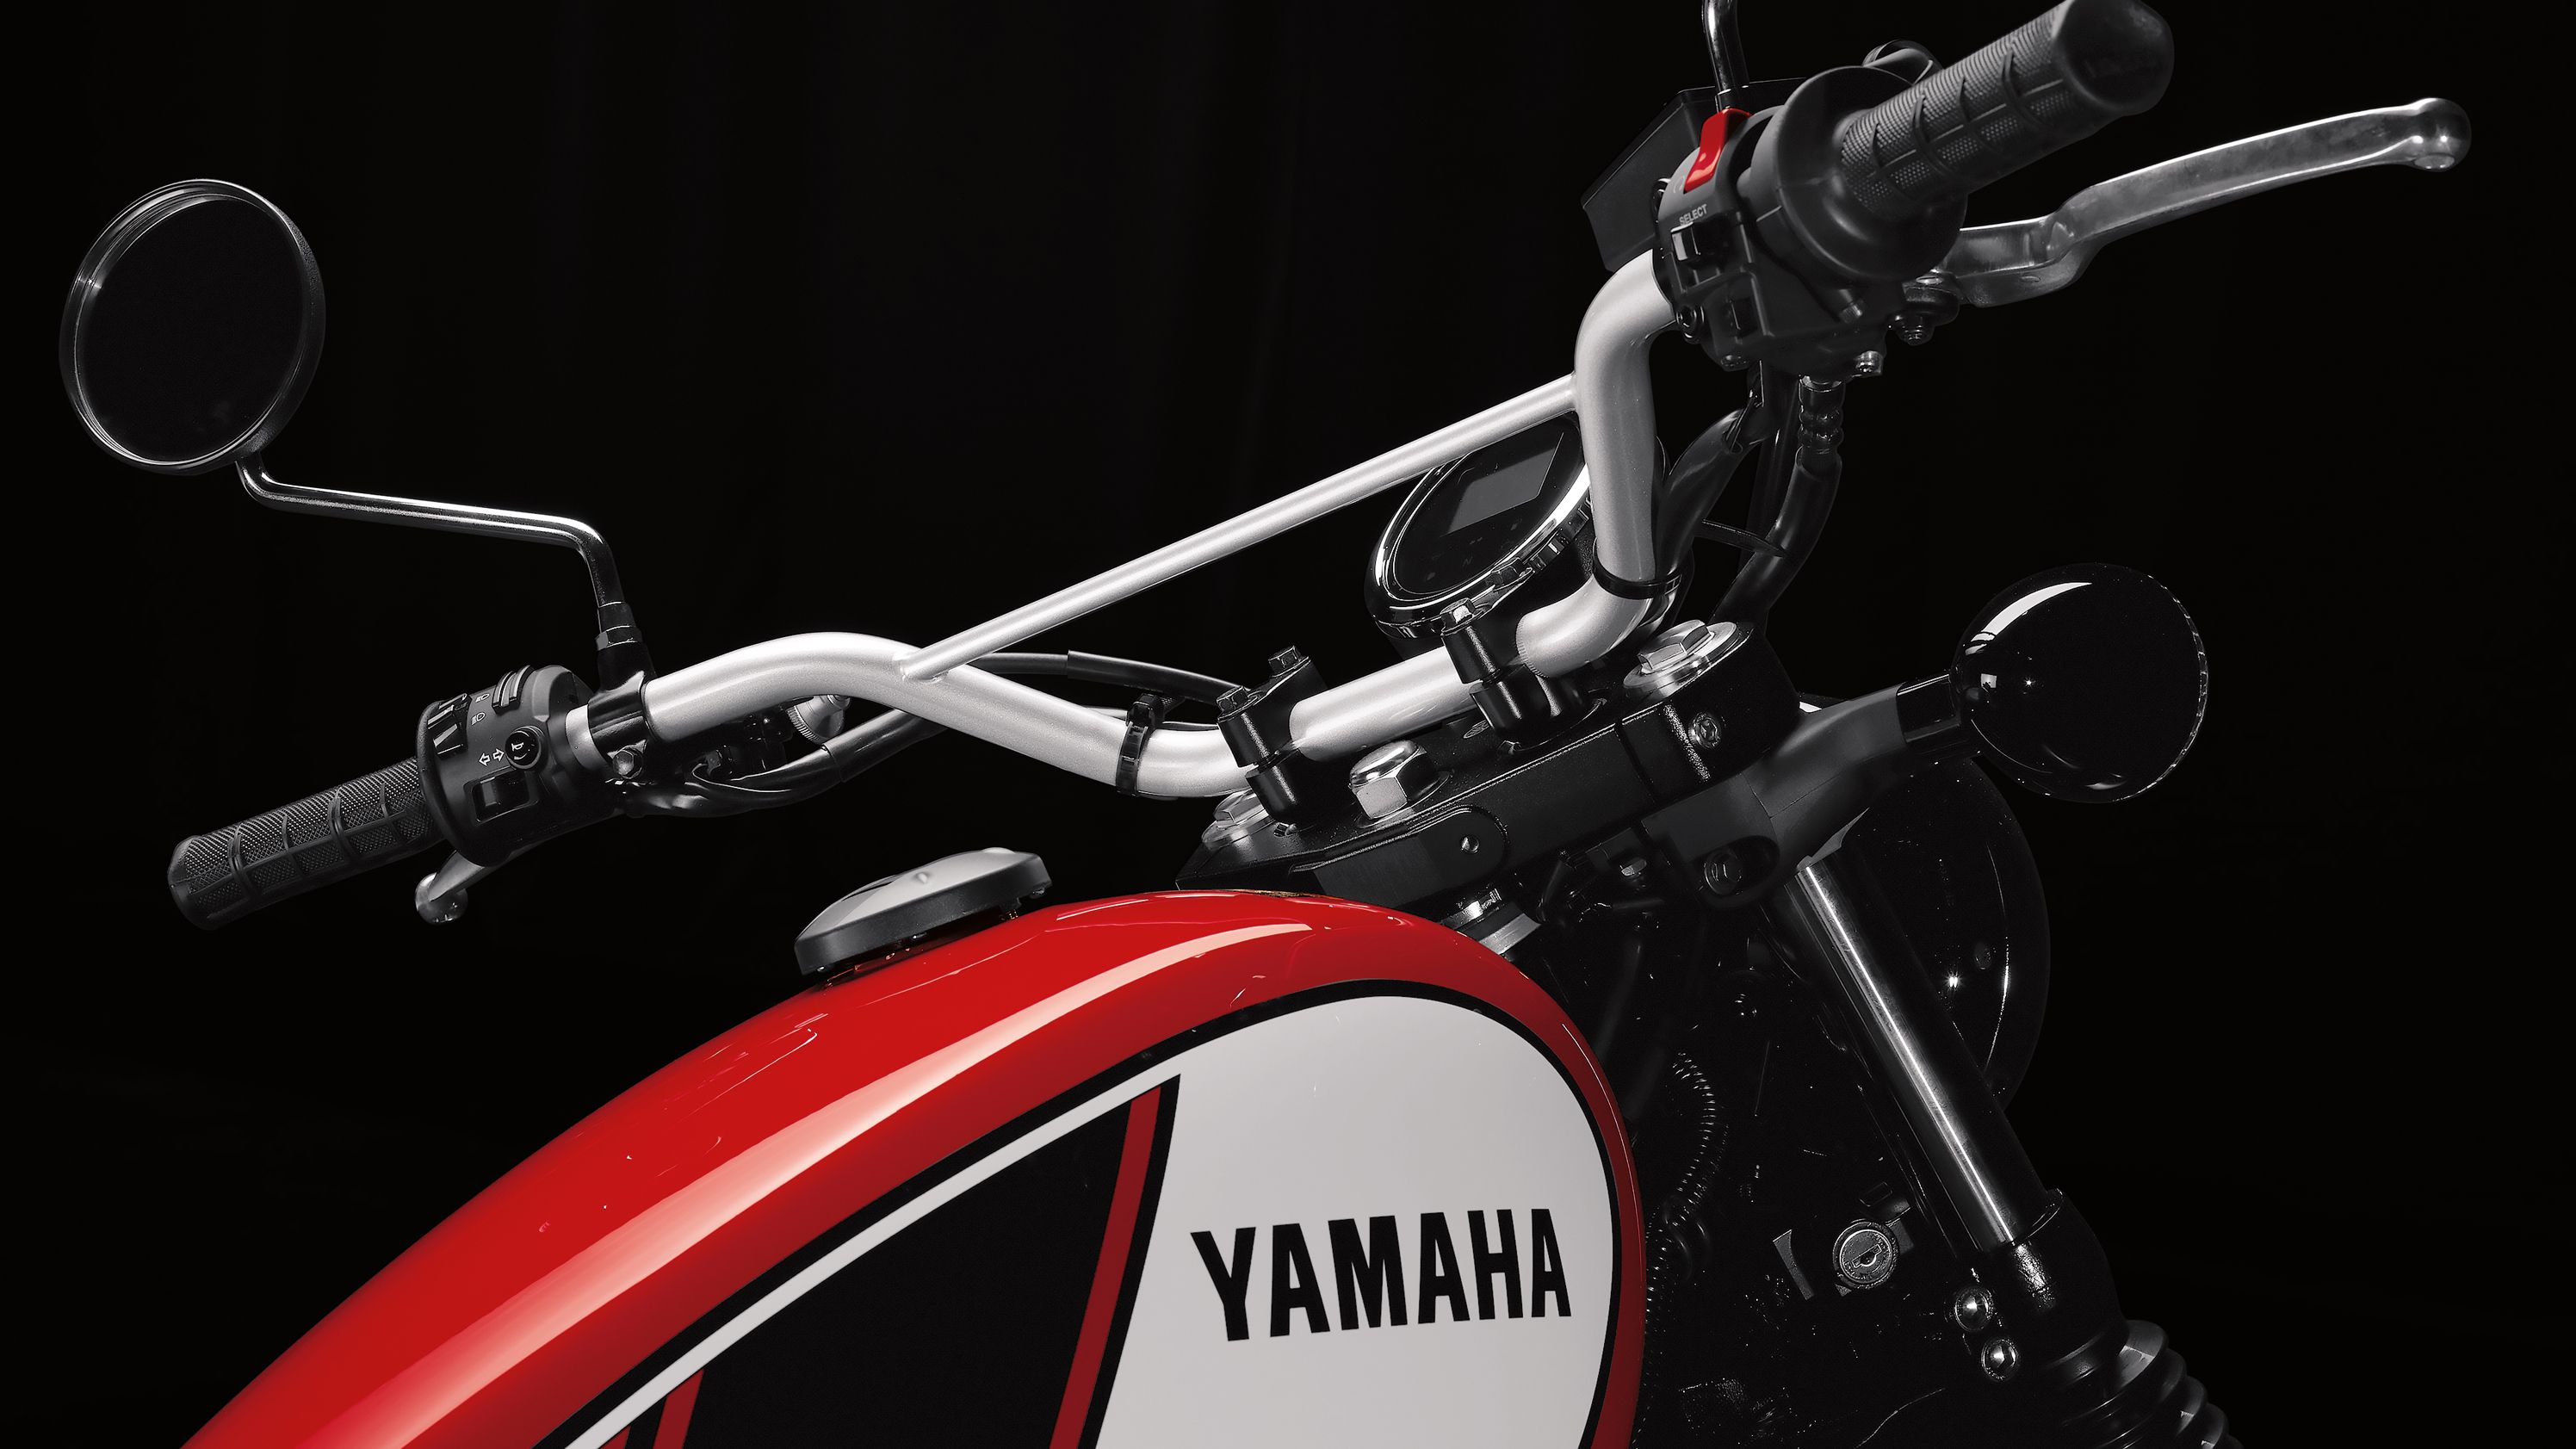 2017 Yamaha SCR950 